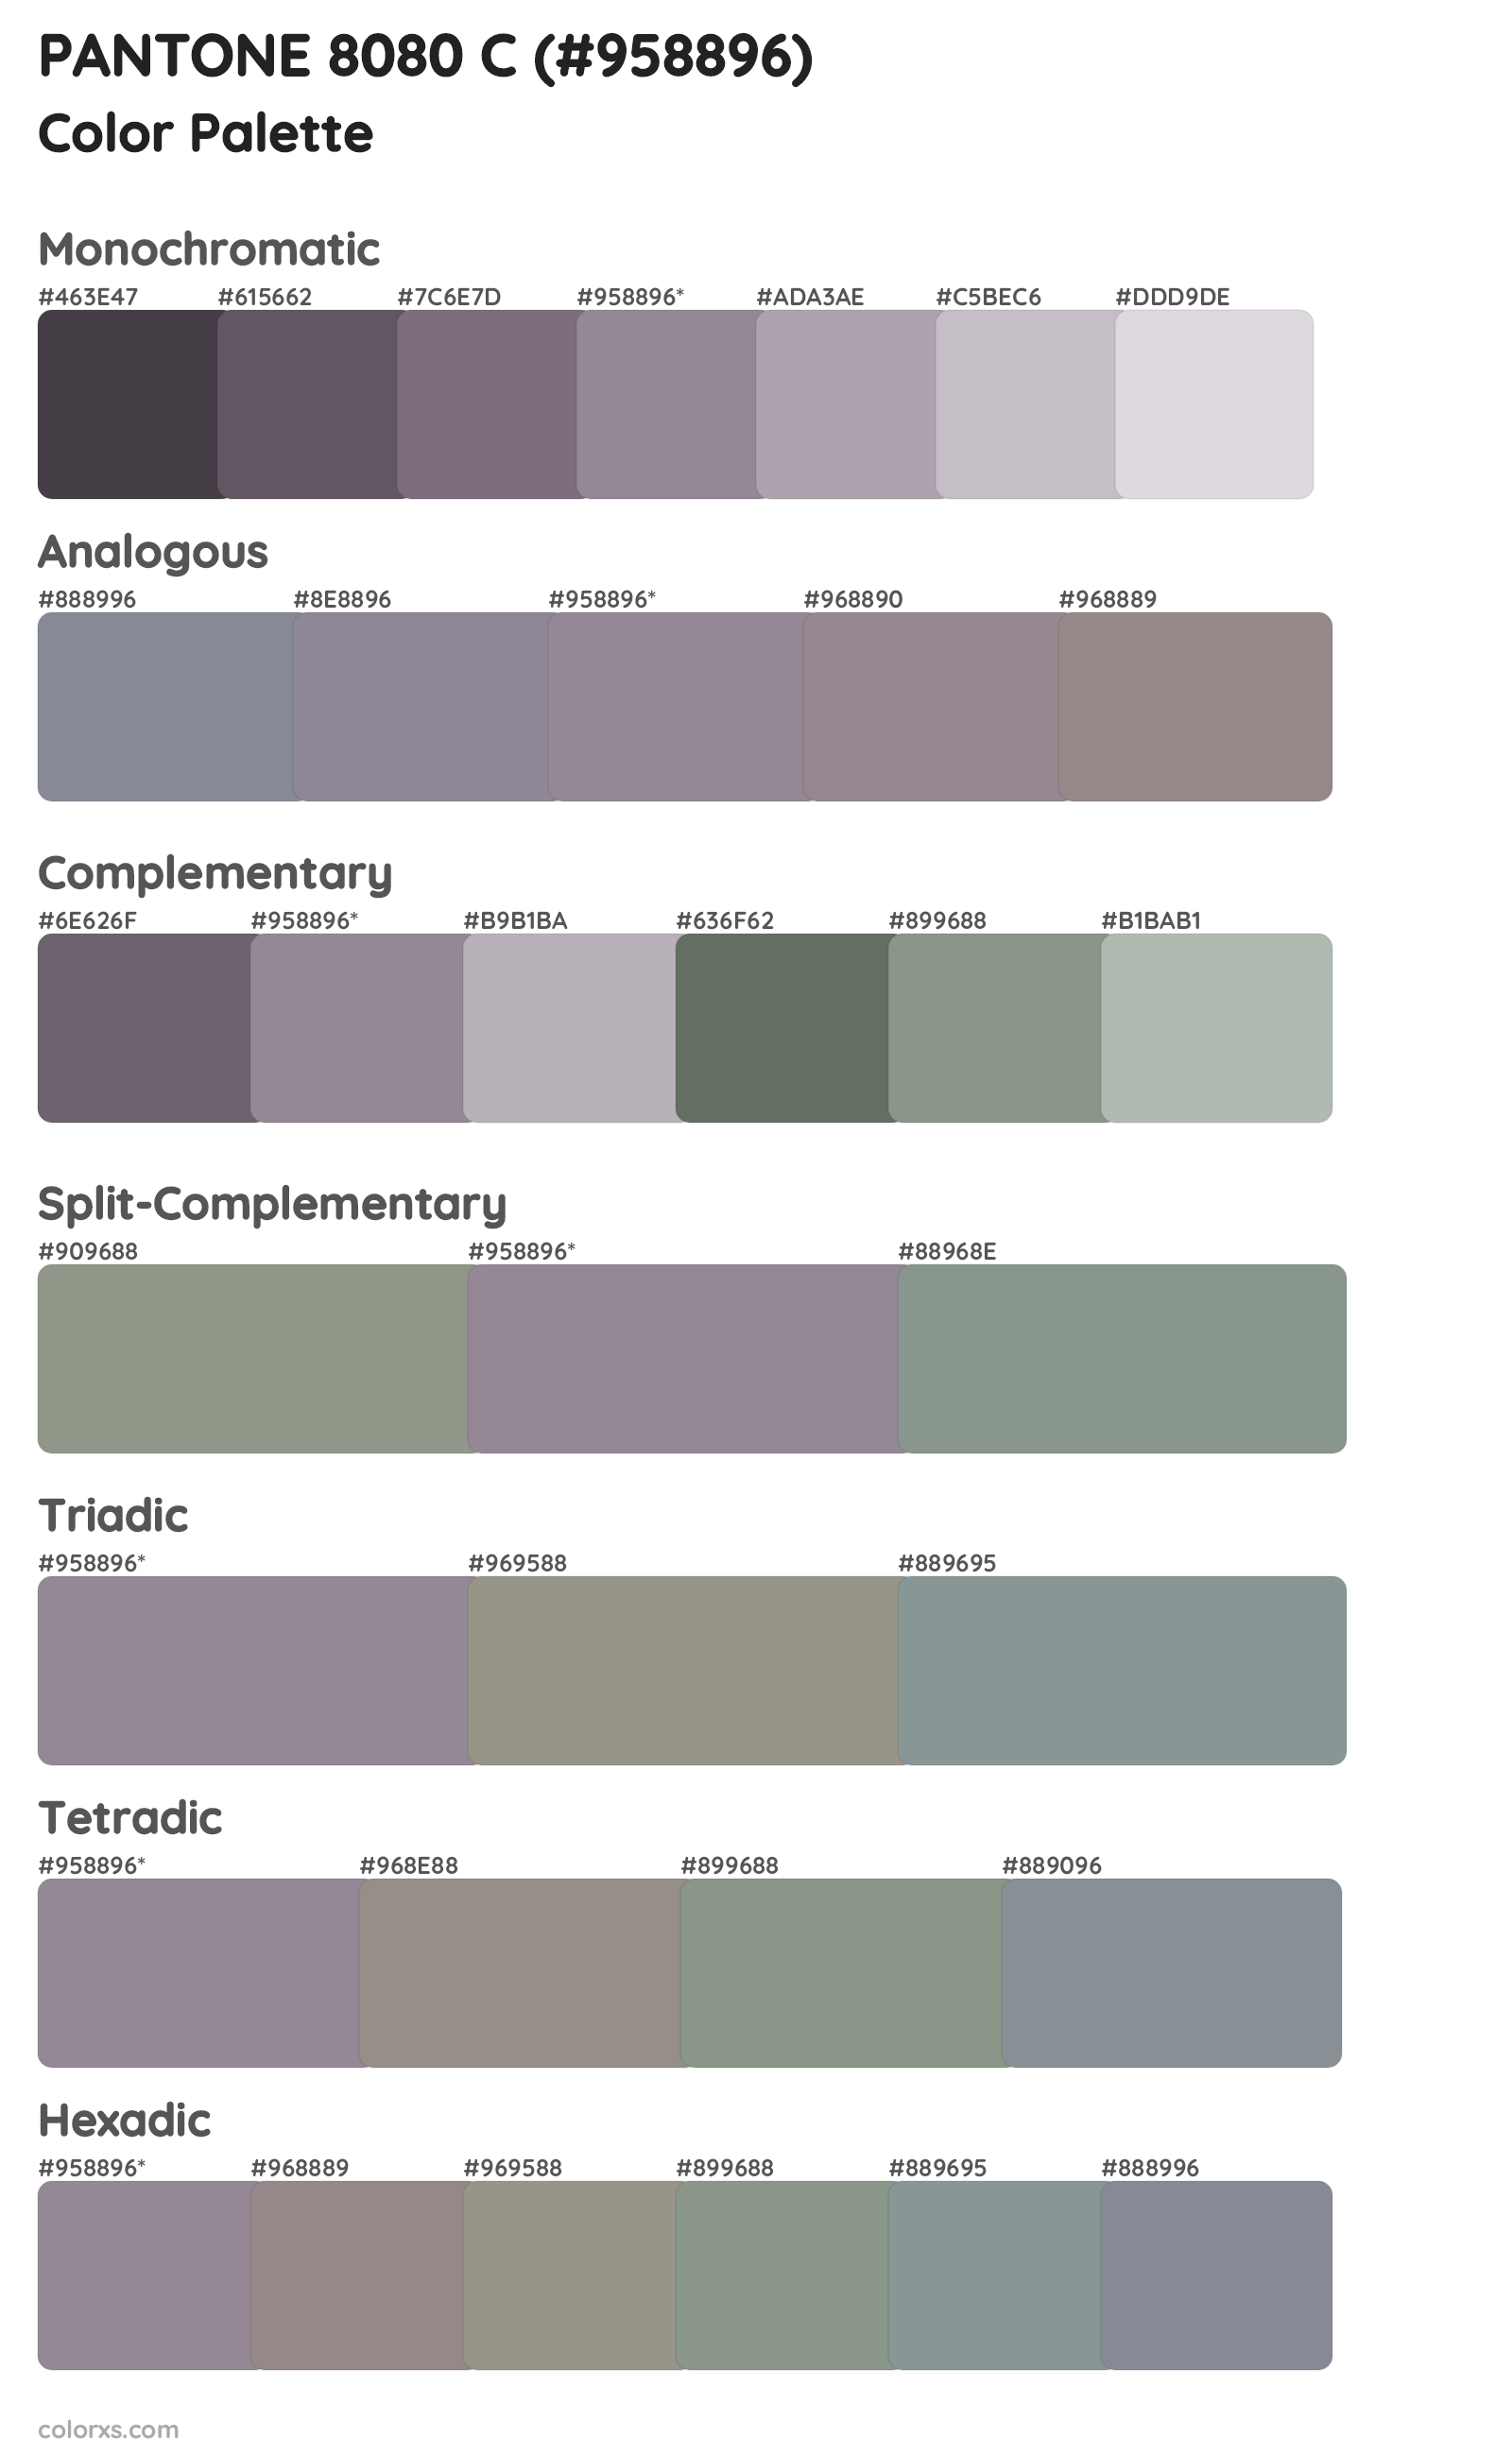 PANTONE 8080 C Color Scheme Palettes